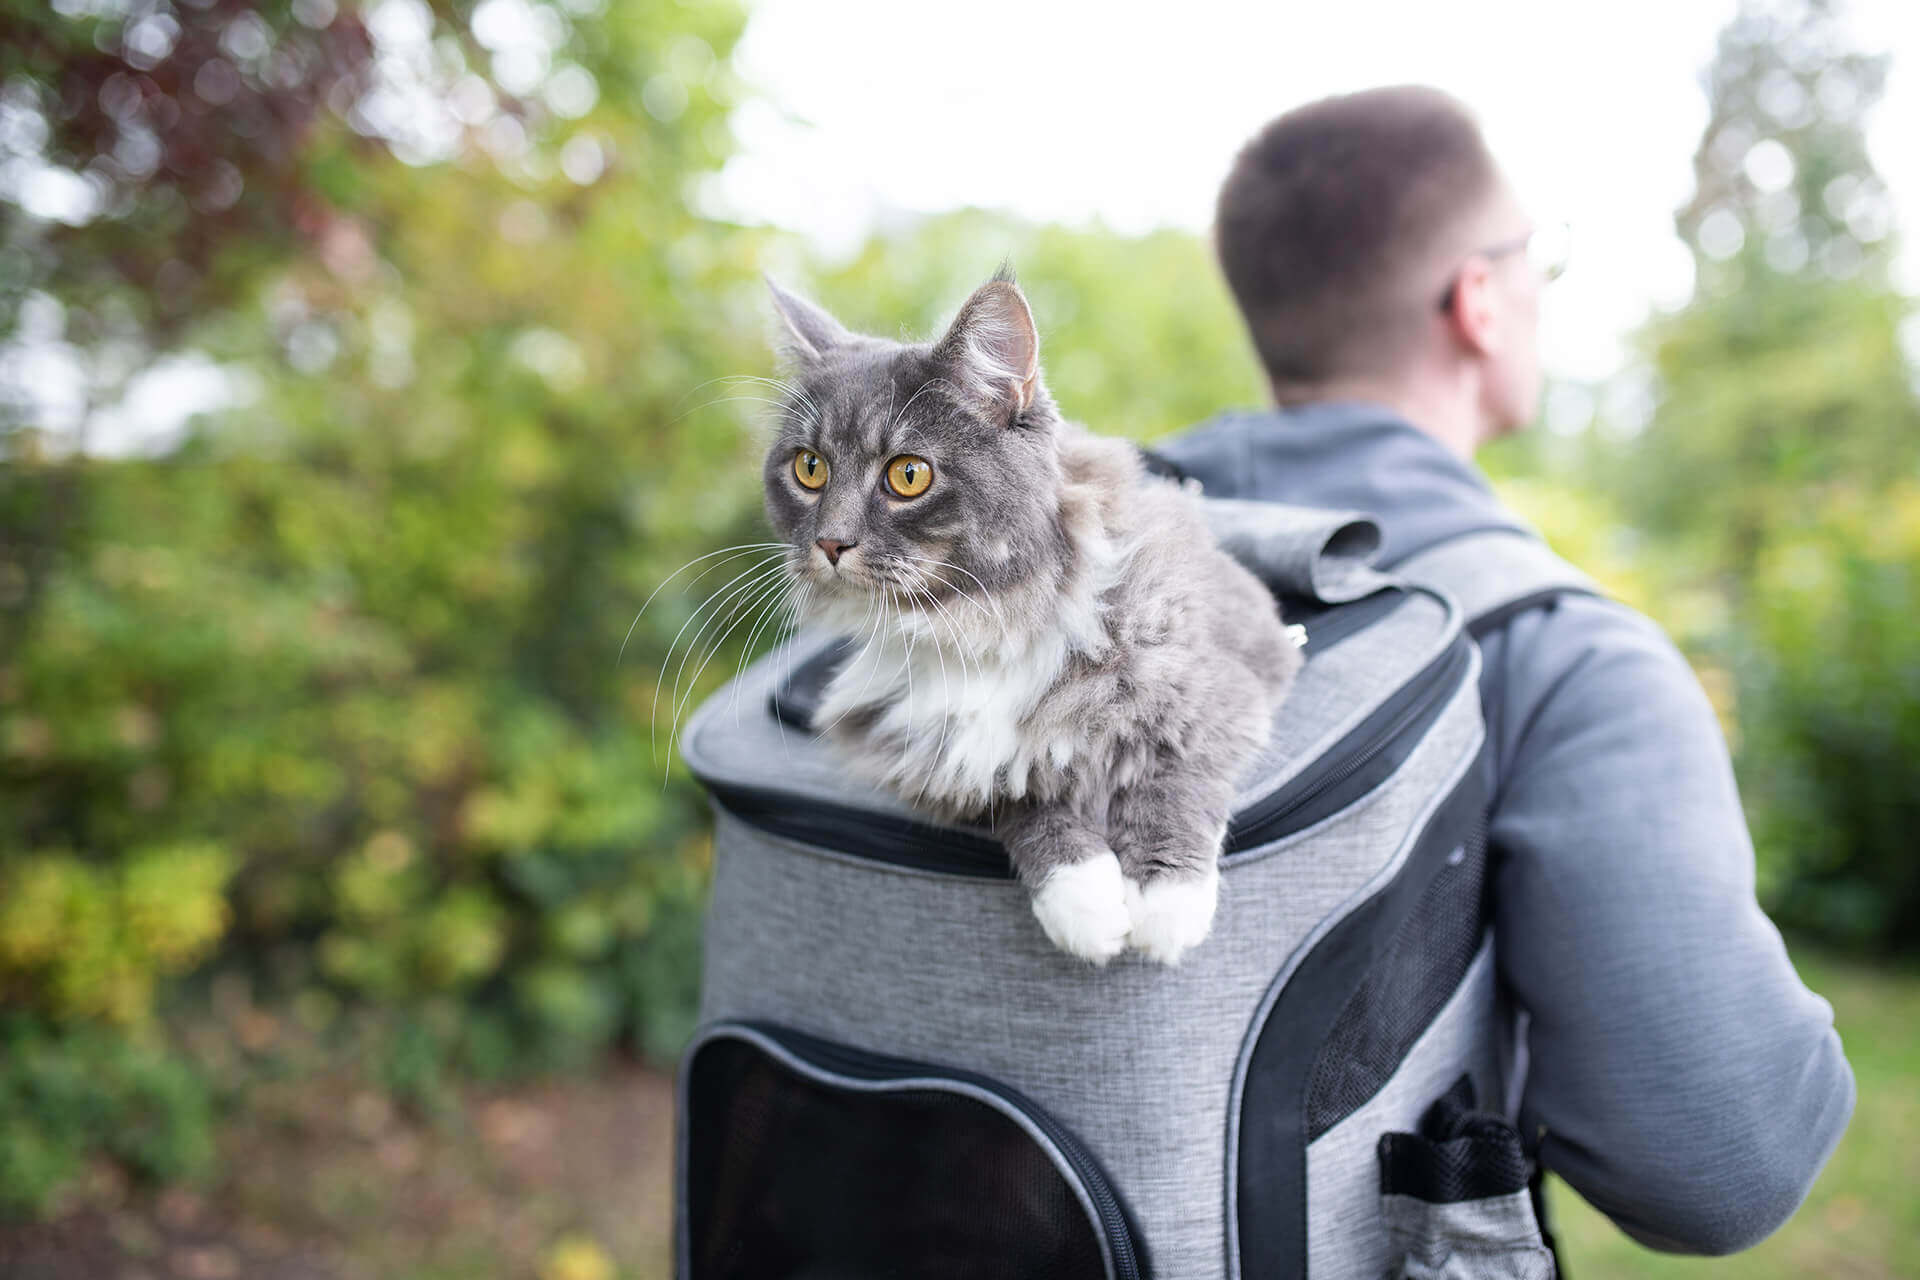 homme en randonnée avec un chat dans un sac à dos